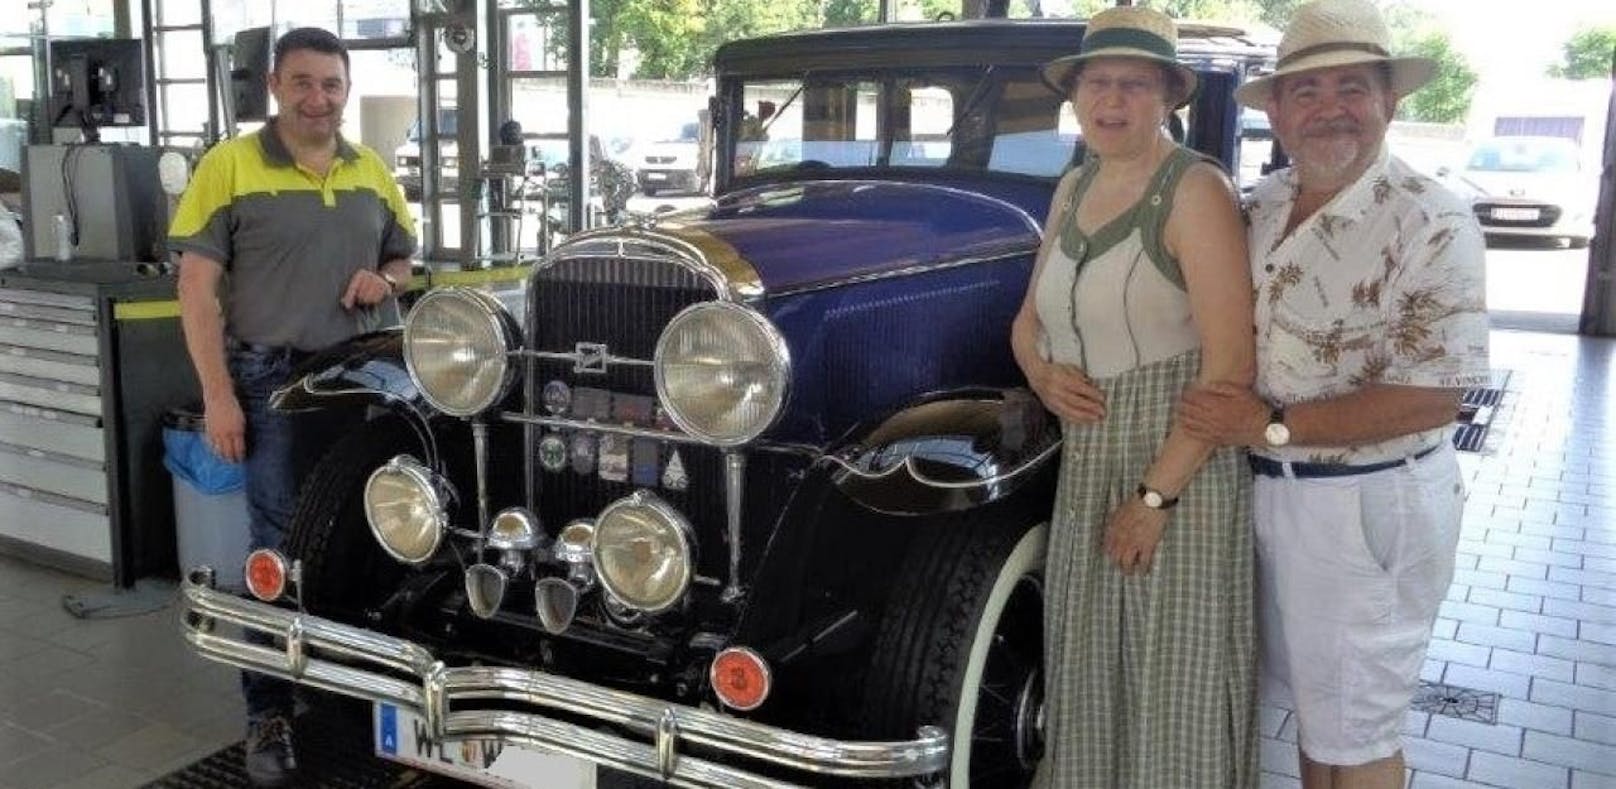 Mit diesem Buick aus dem Jahr 1930 kamen die Besitzer zum ÖAMTC, um das Pickerl zu machen.